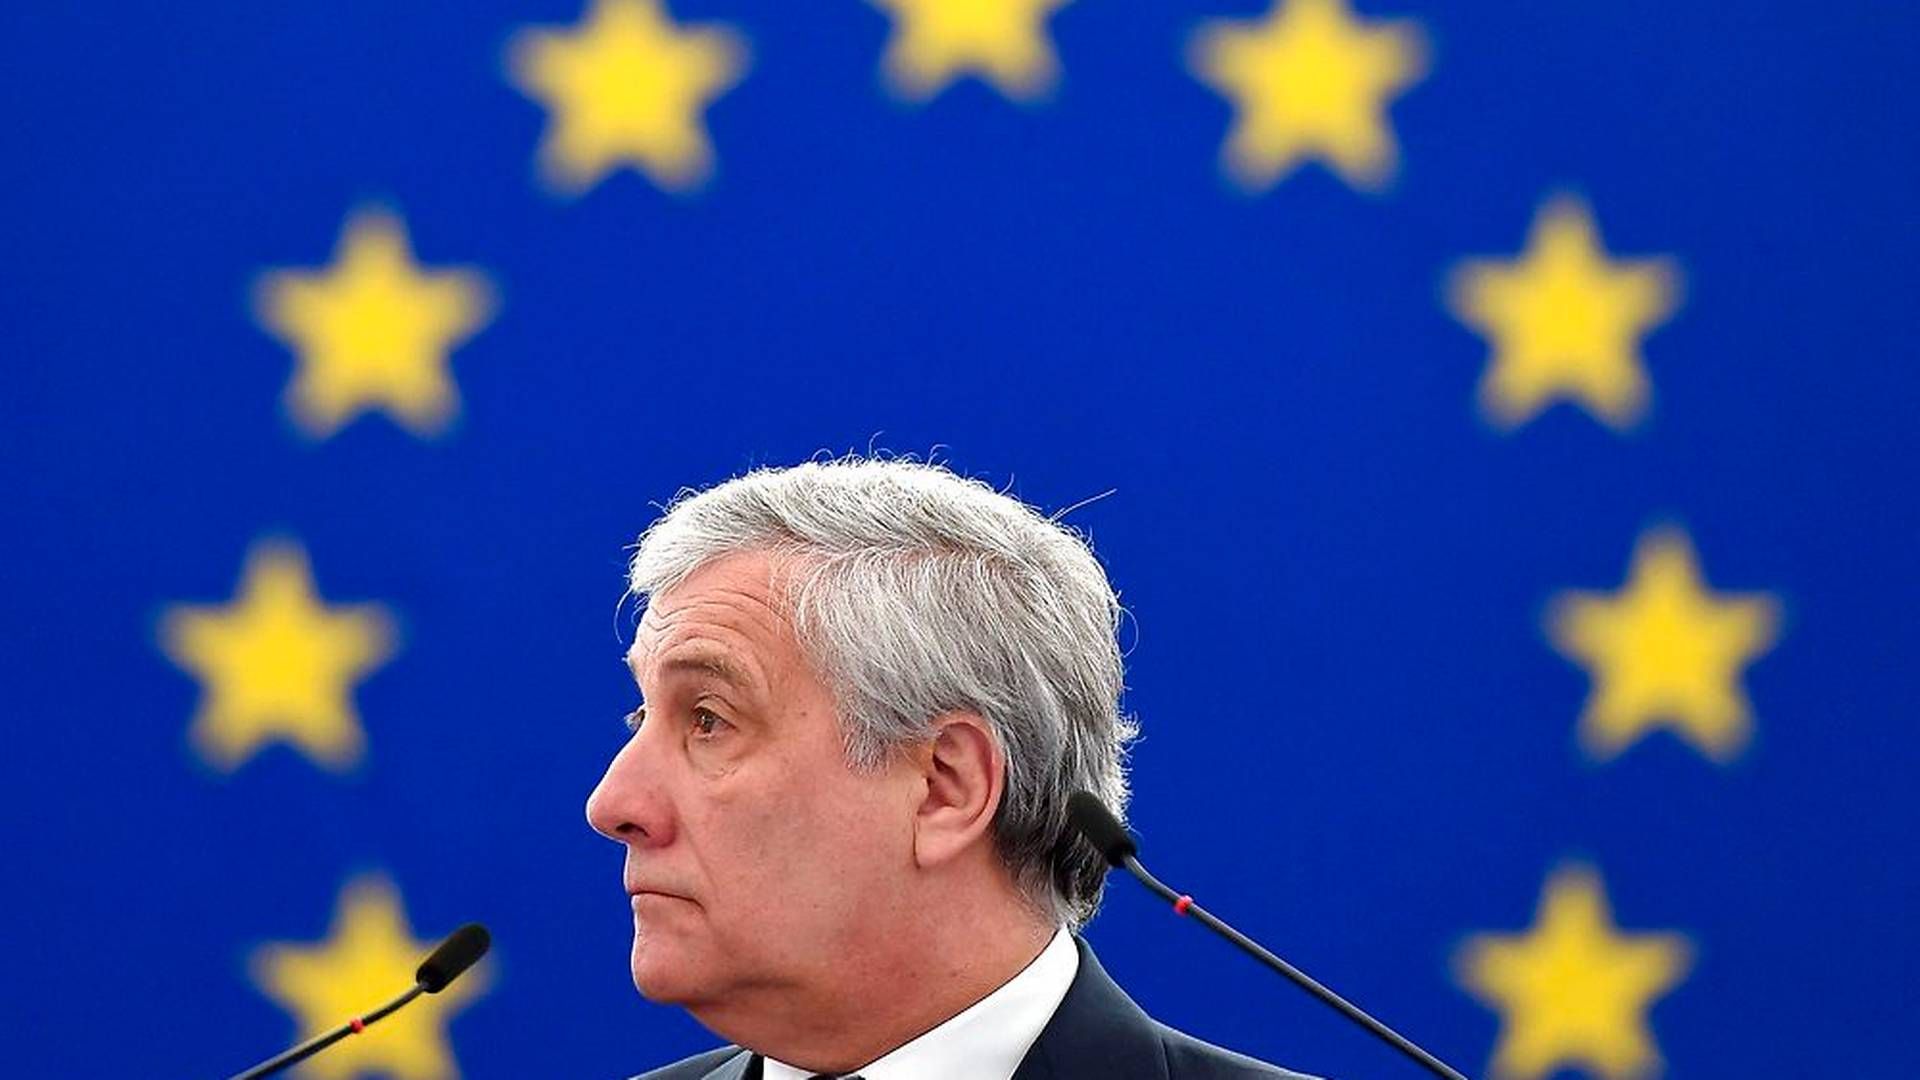 Antonio Tajani går efter at blive genvalgt som formand for Europa-Parlamentet. | Foto: Ritzau Scanpix/FREDERICK FLORIN / AFP